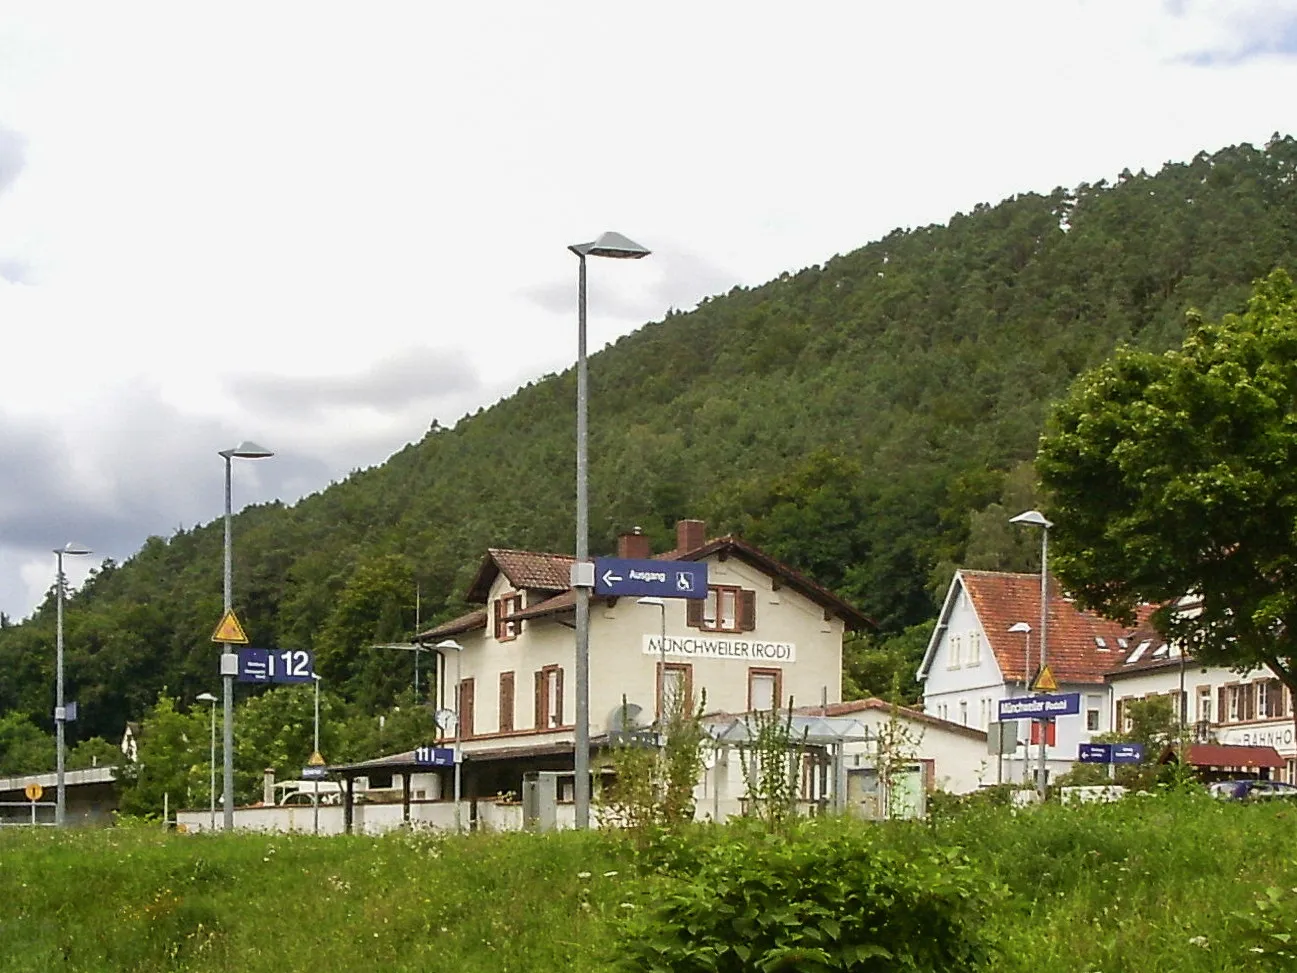 Bild von Münchweiler an der Rodalb